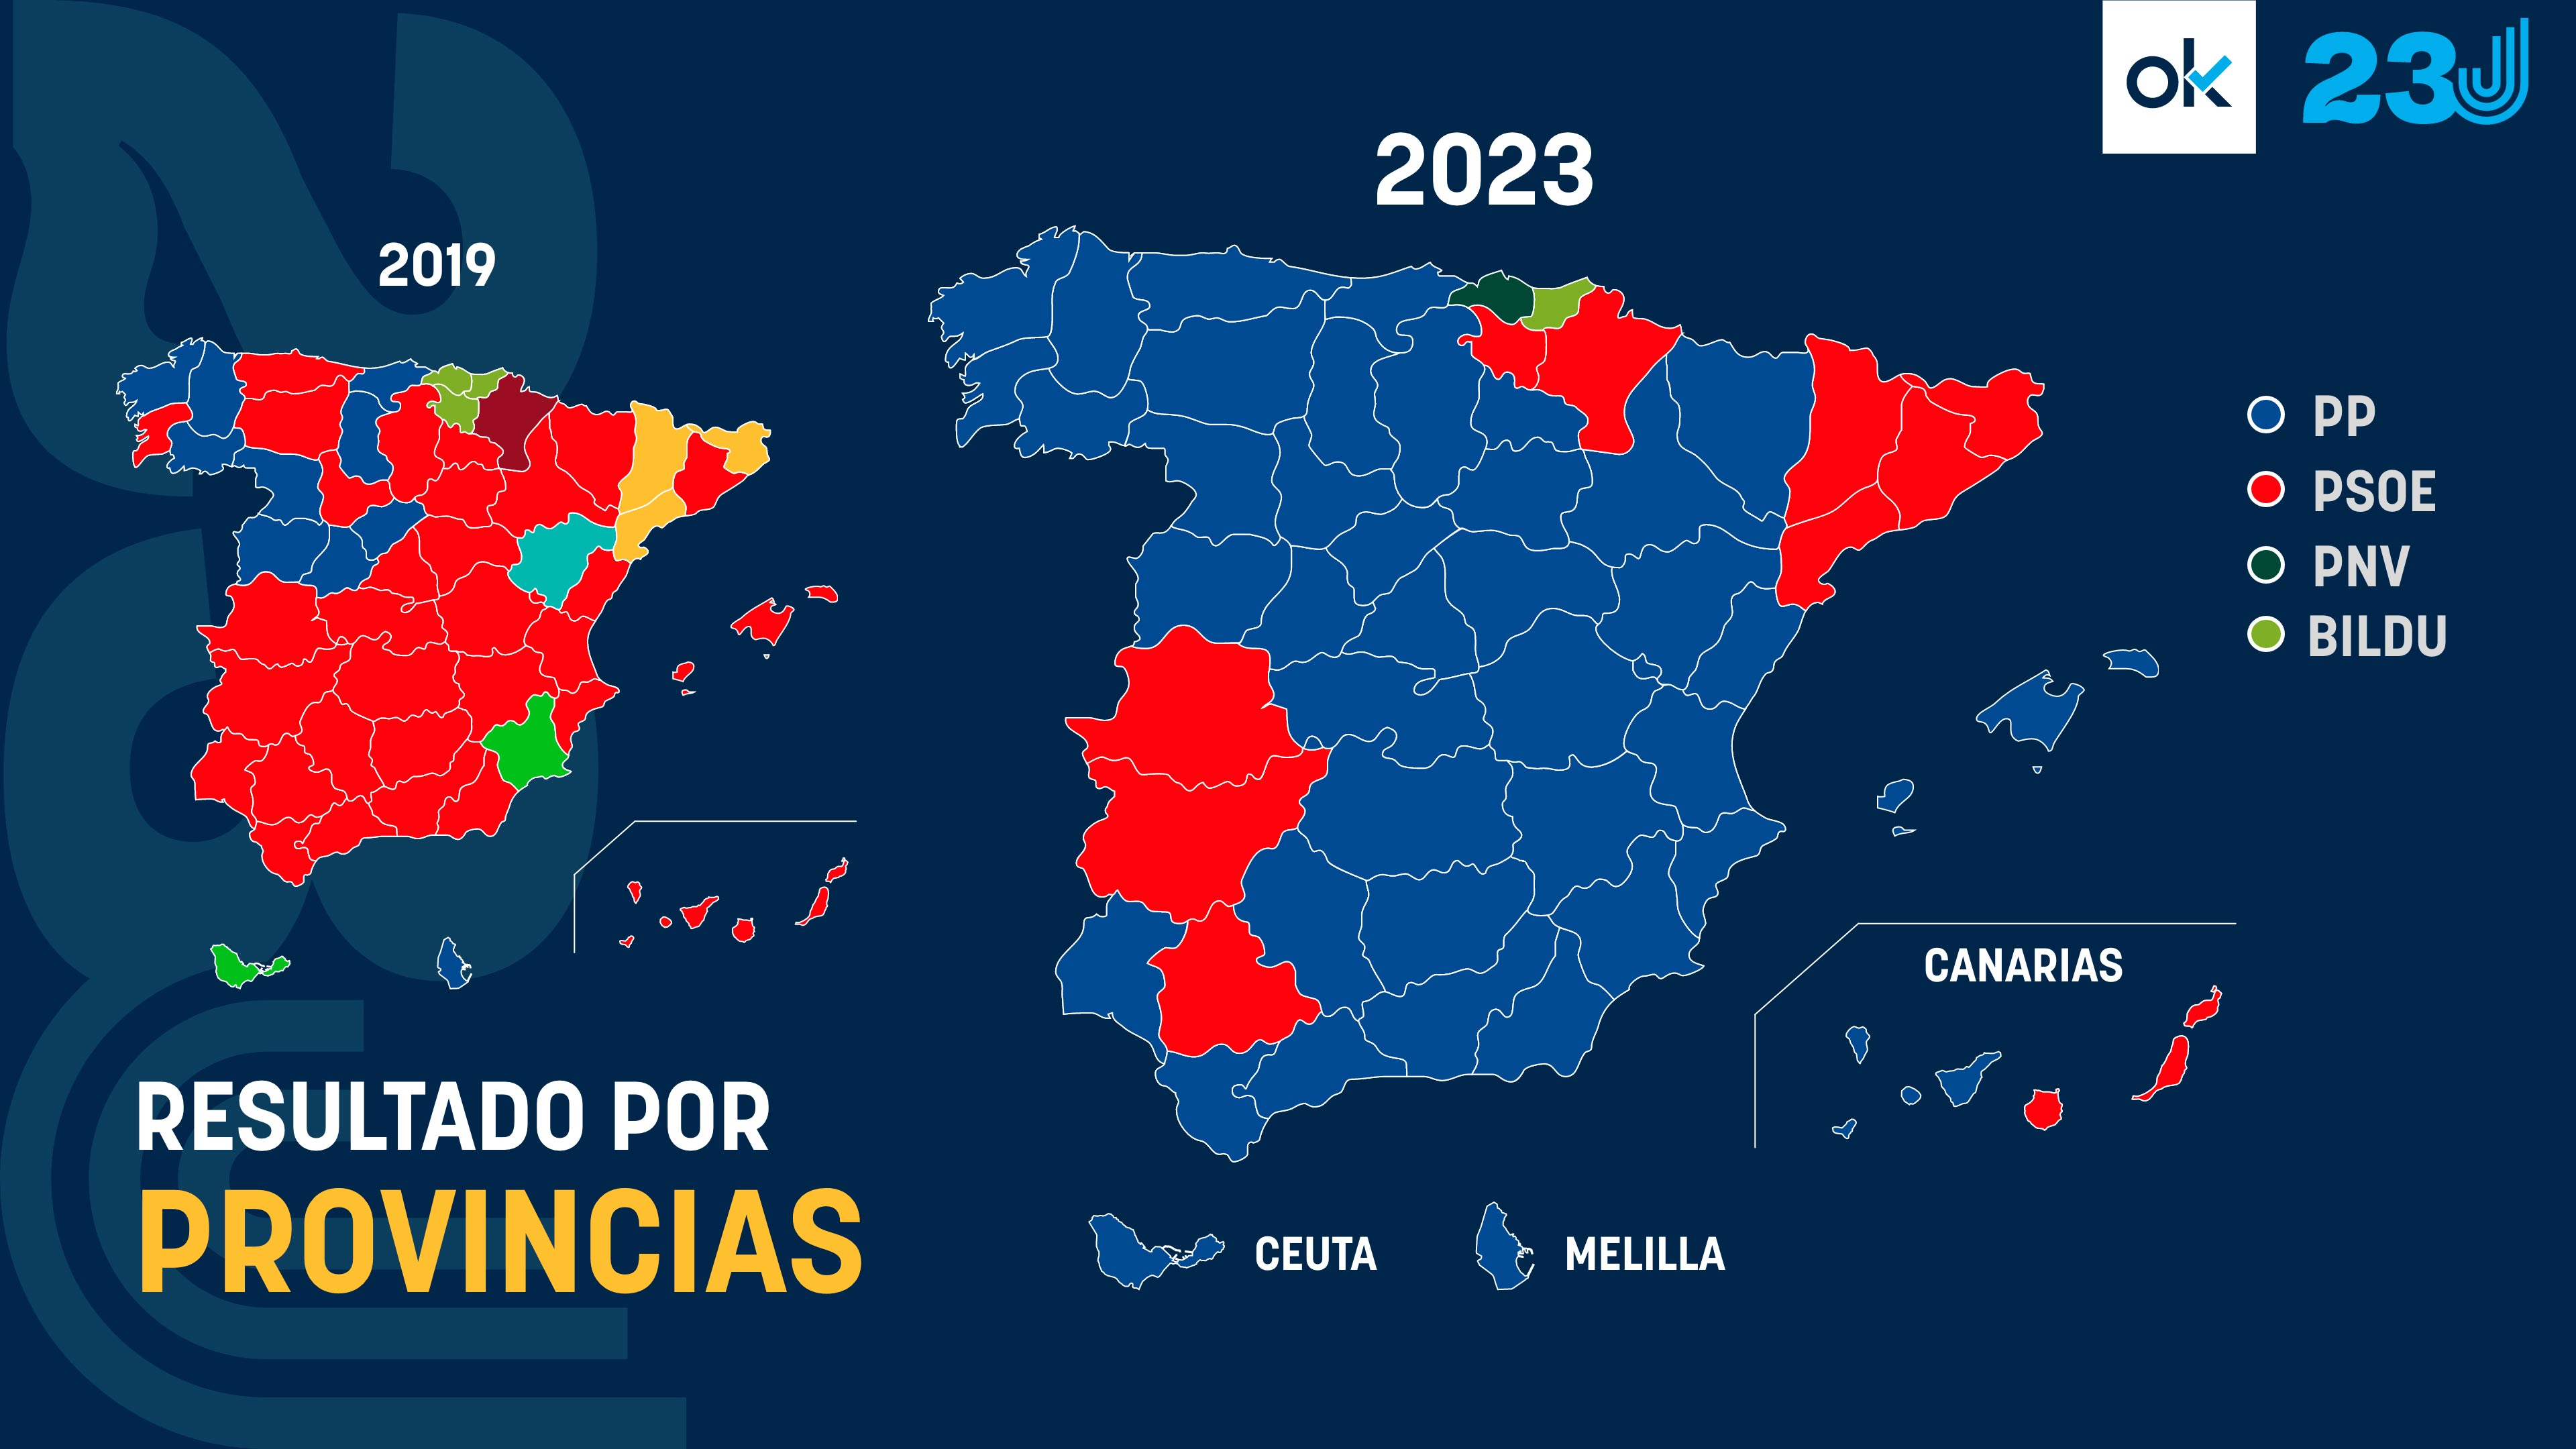 MANIFESTACIONES |ESPAÑA - Página 2 Mapa-comparativa-provincias-2019-2023